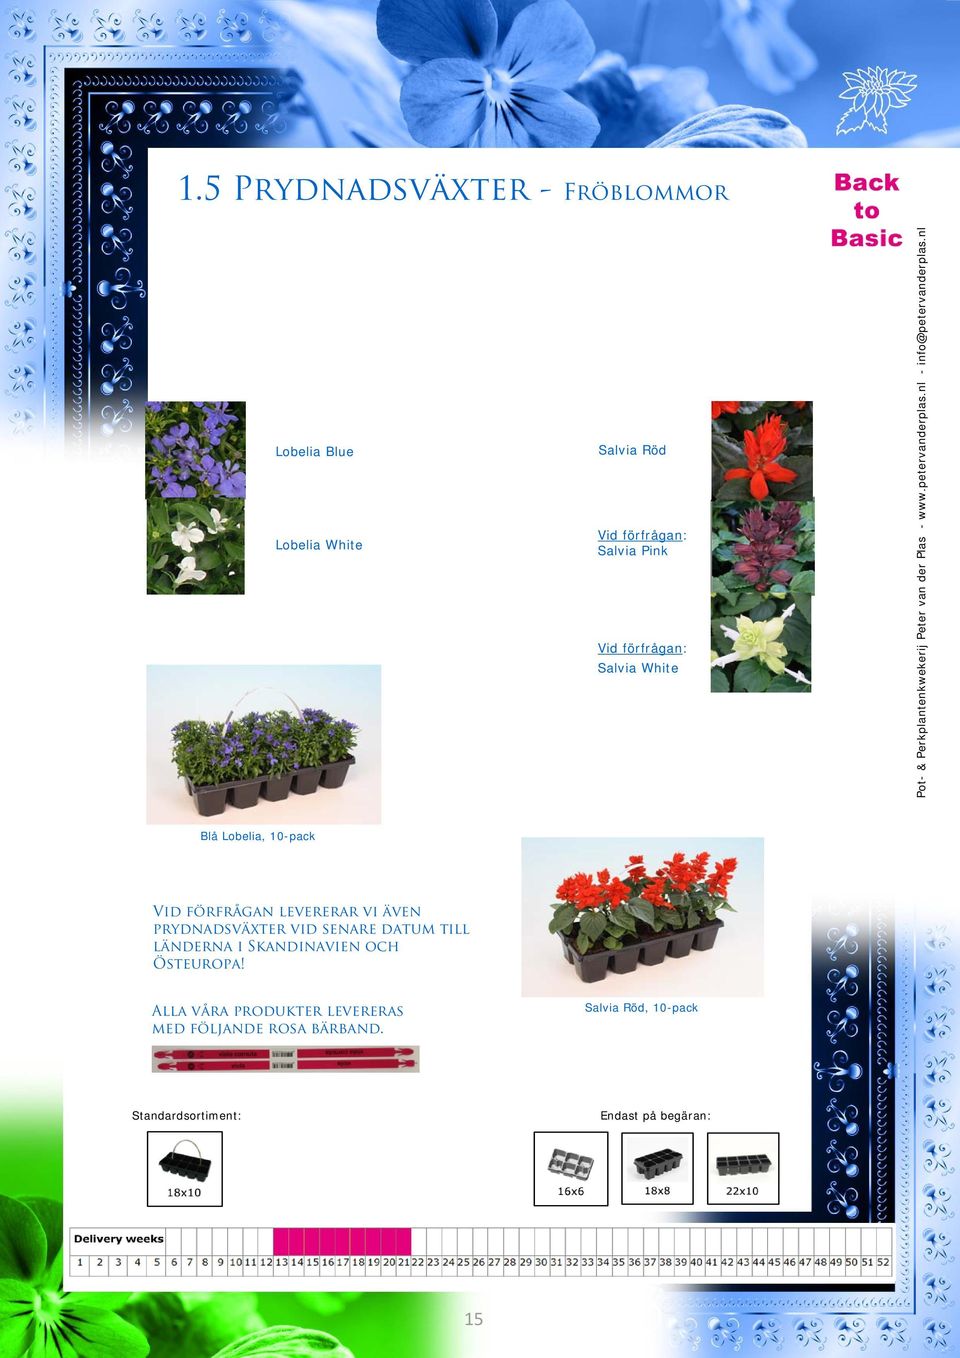 nl Blå Lobelia, 10-pack Vid förfrågan levererar vi även prydnadsväxter vid senare datum till länderna i Skandinavien